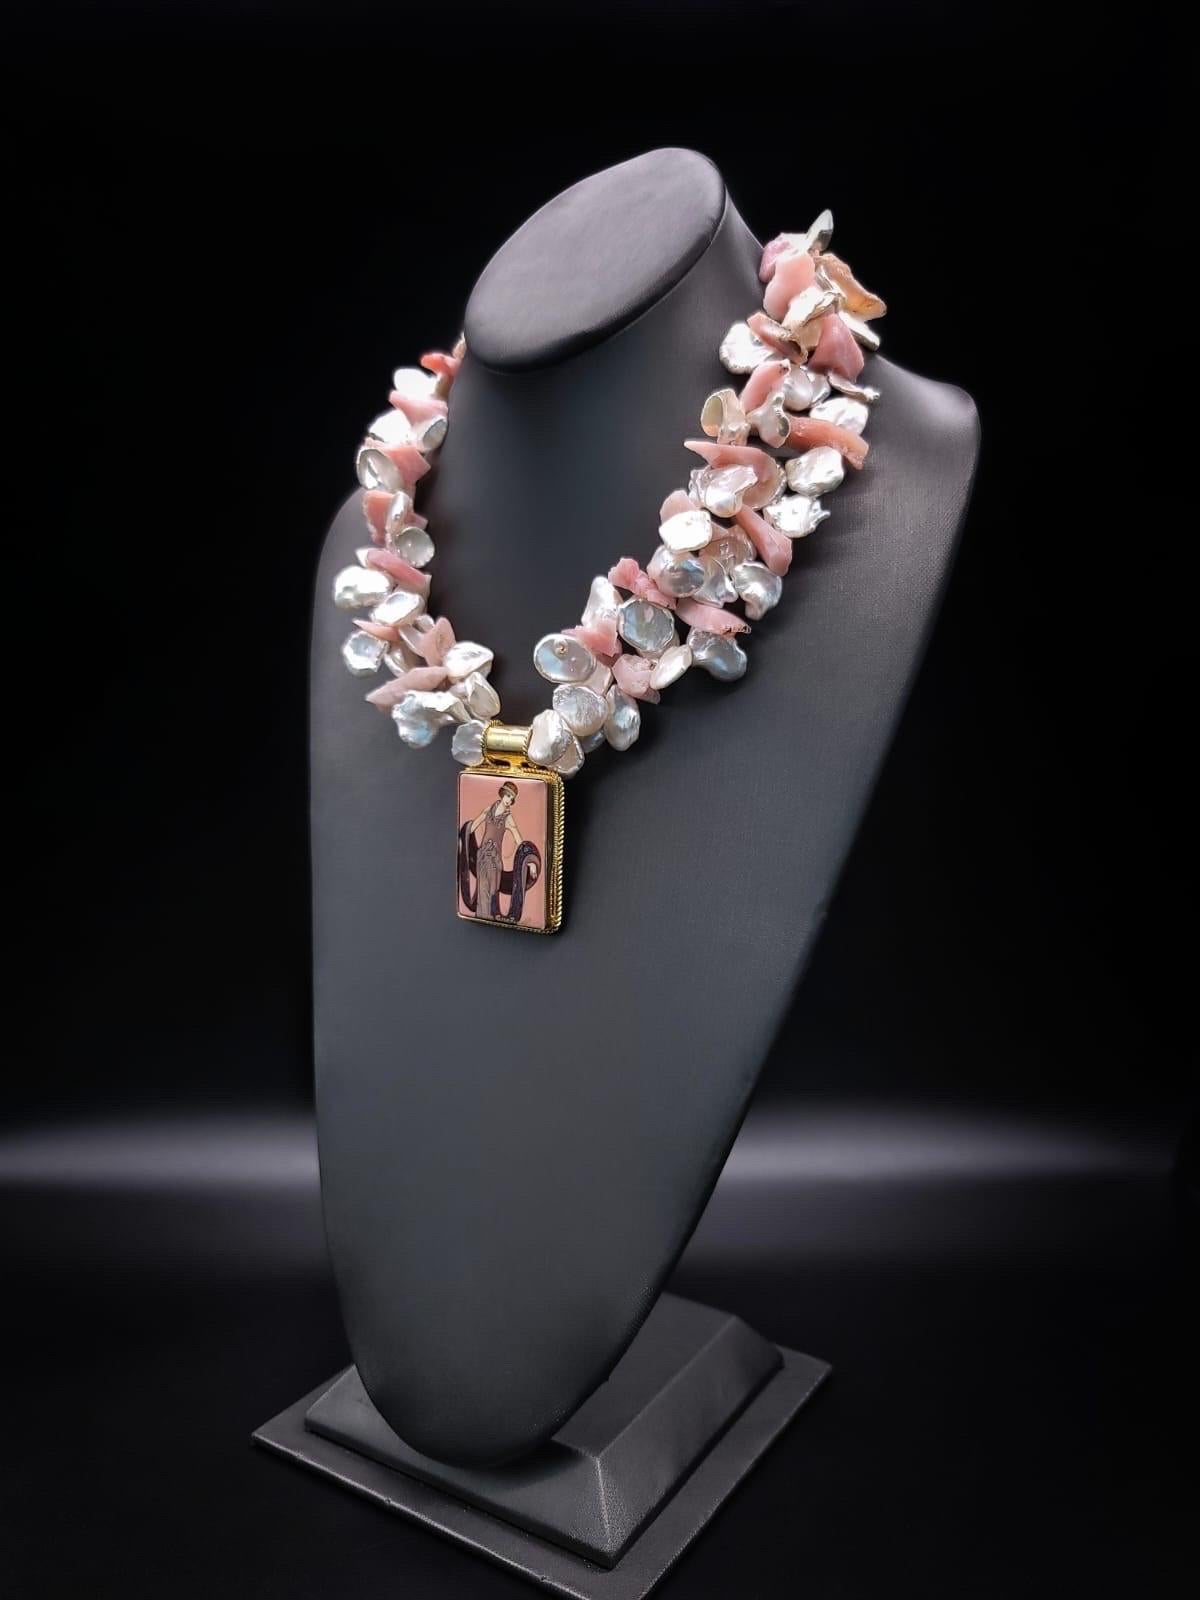 

Voici notre collier exquis, unique en son genre, fusion harmonieuse de l'élégance et de l'artisanat. Ce collier remarquable se compose de deux rangs de perles Keshi rayonnantes et d'opales roses du Pérou, qui culminent dans un chef-d'œuvre orné